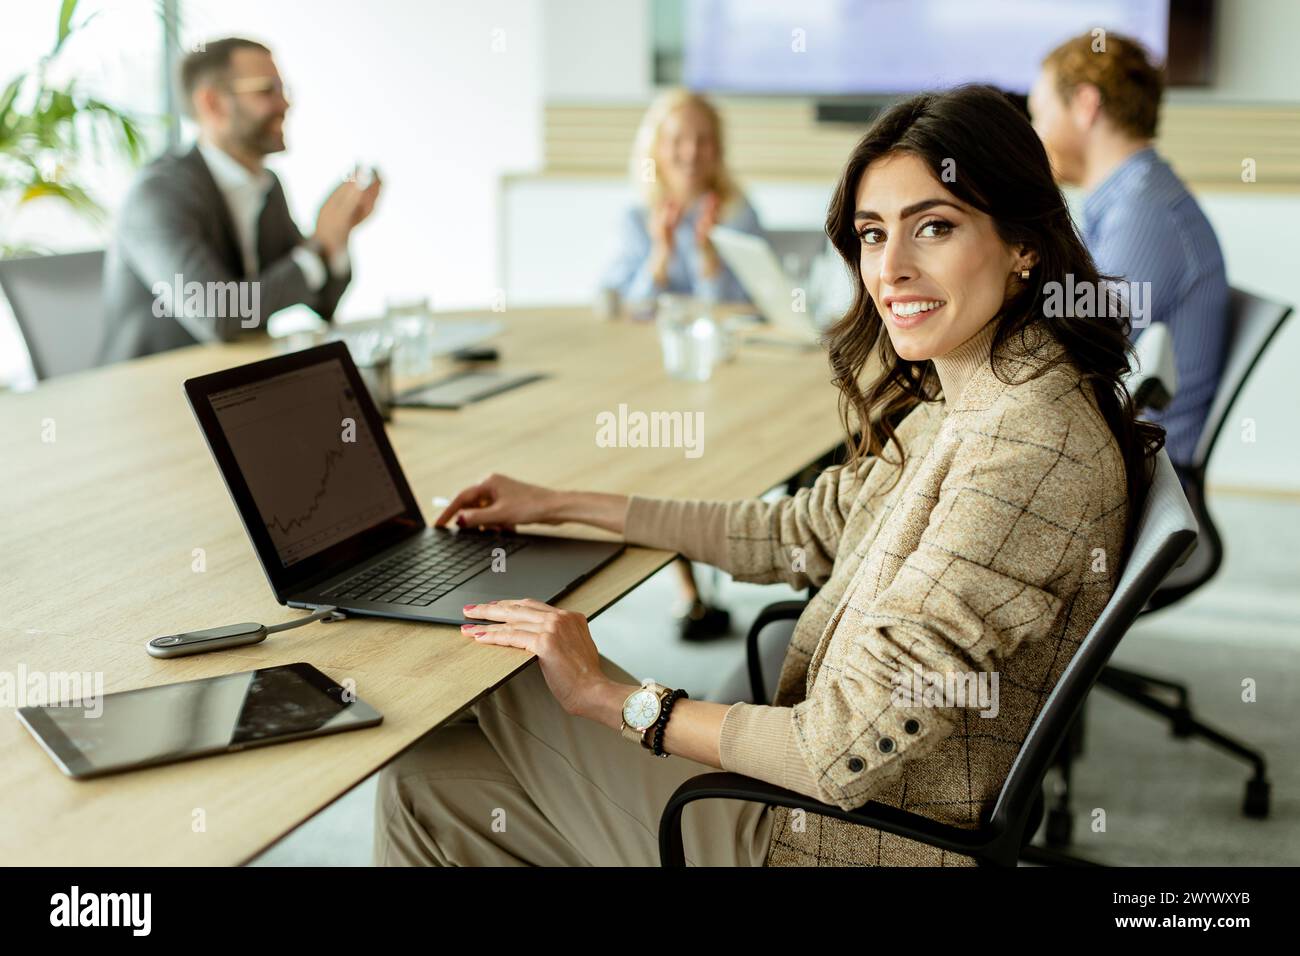 Selbstbewusste Geschäftsfrau engagiert sich in einem Meeting, ihr Lächeln spiegelt Erfolg und Teamarbeit in einem modernen Büroumfeld wider. Stockfoto